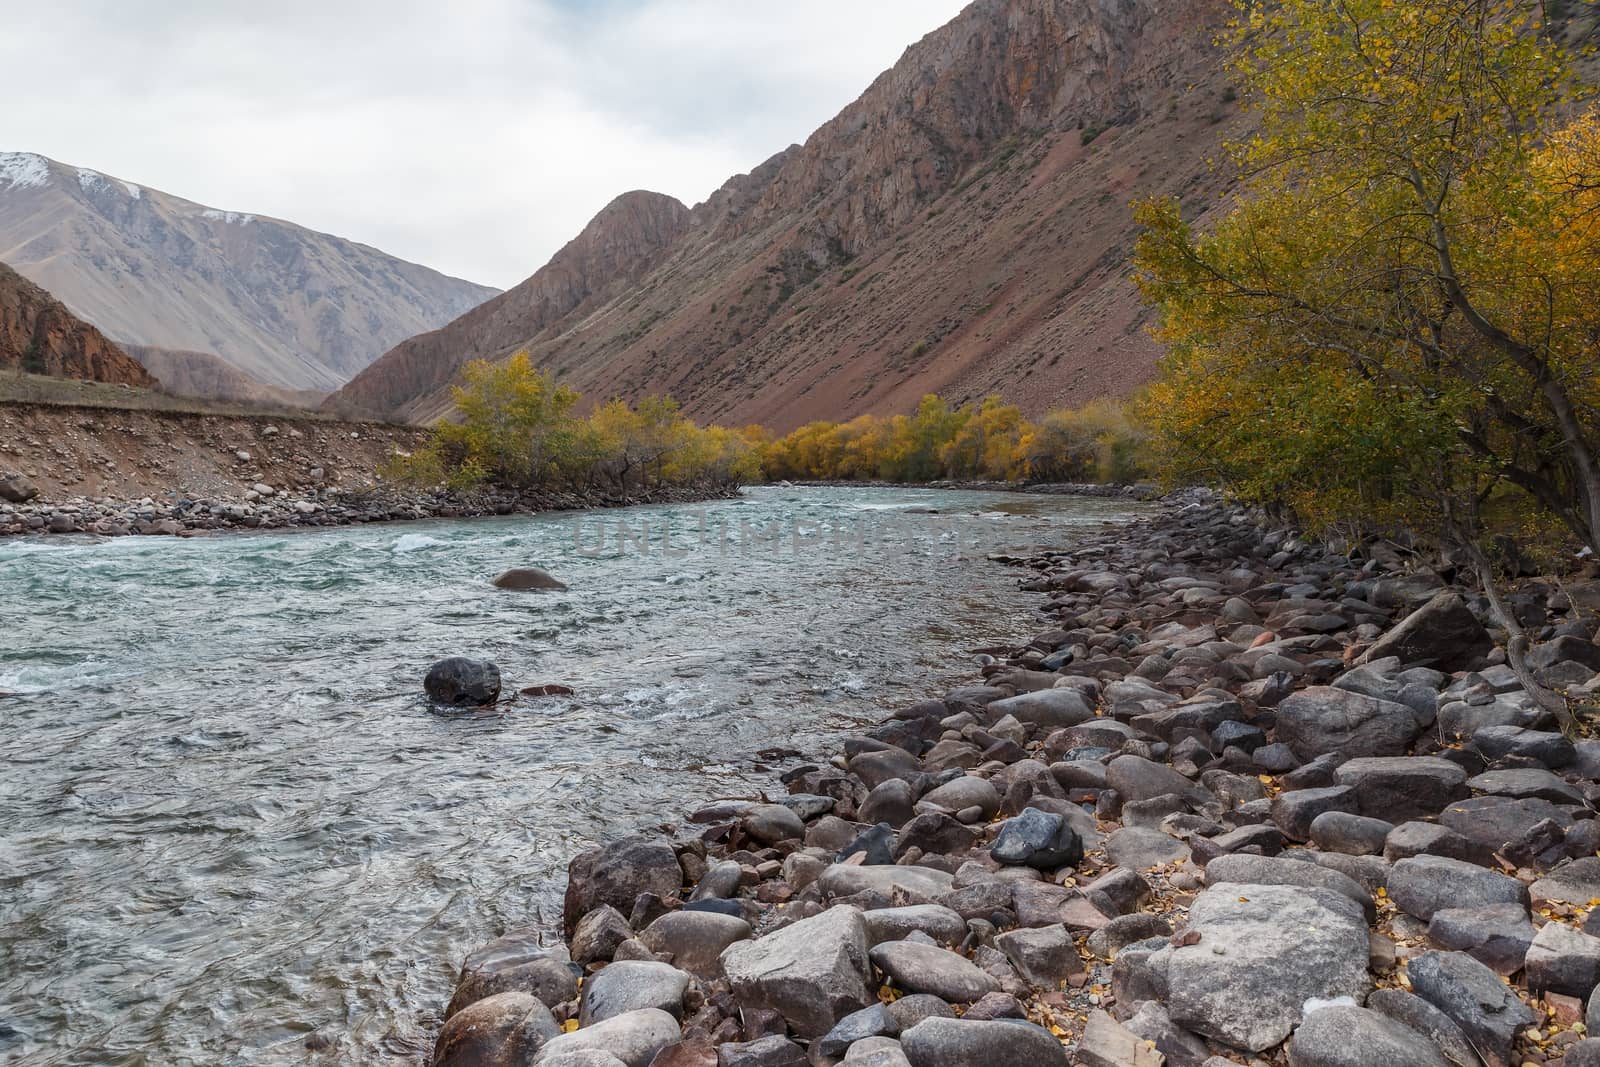 Kokemeren river, Kyrgyzstan by Mieszko9